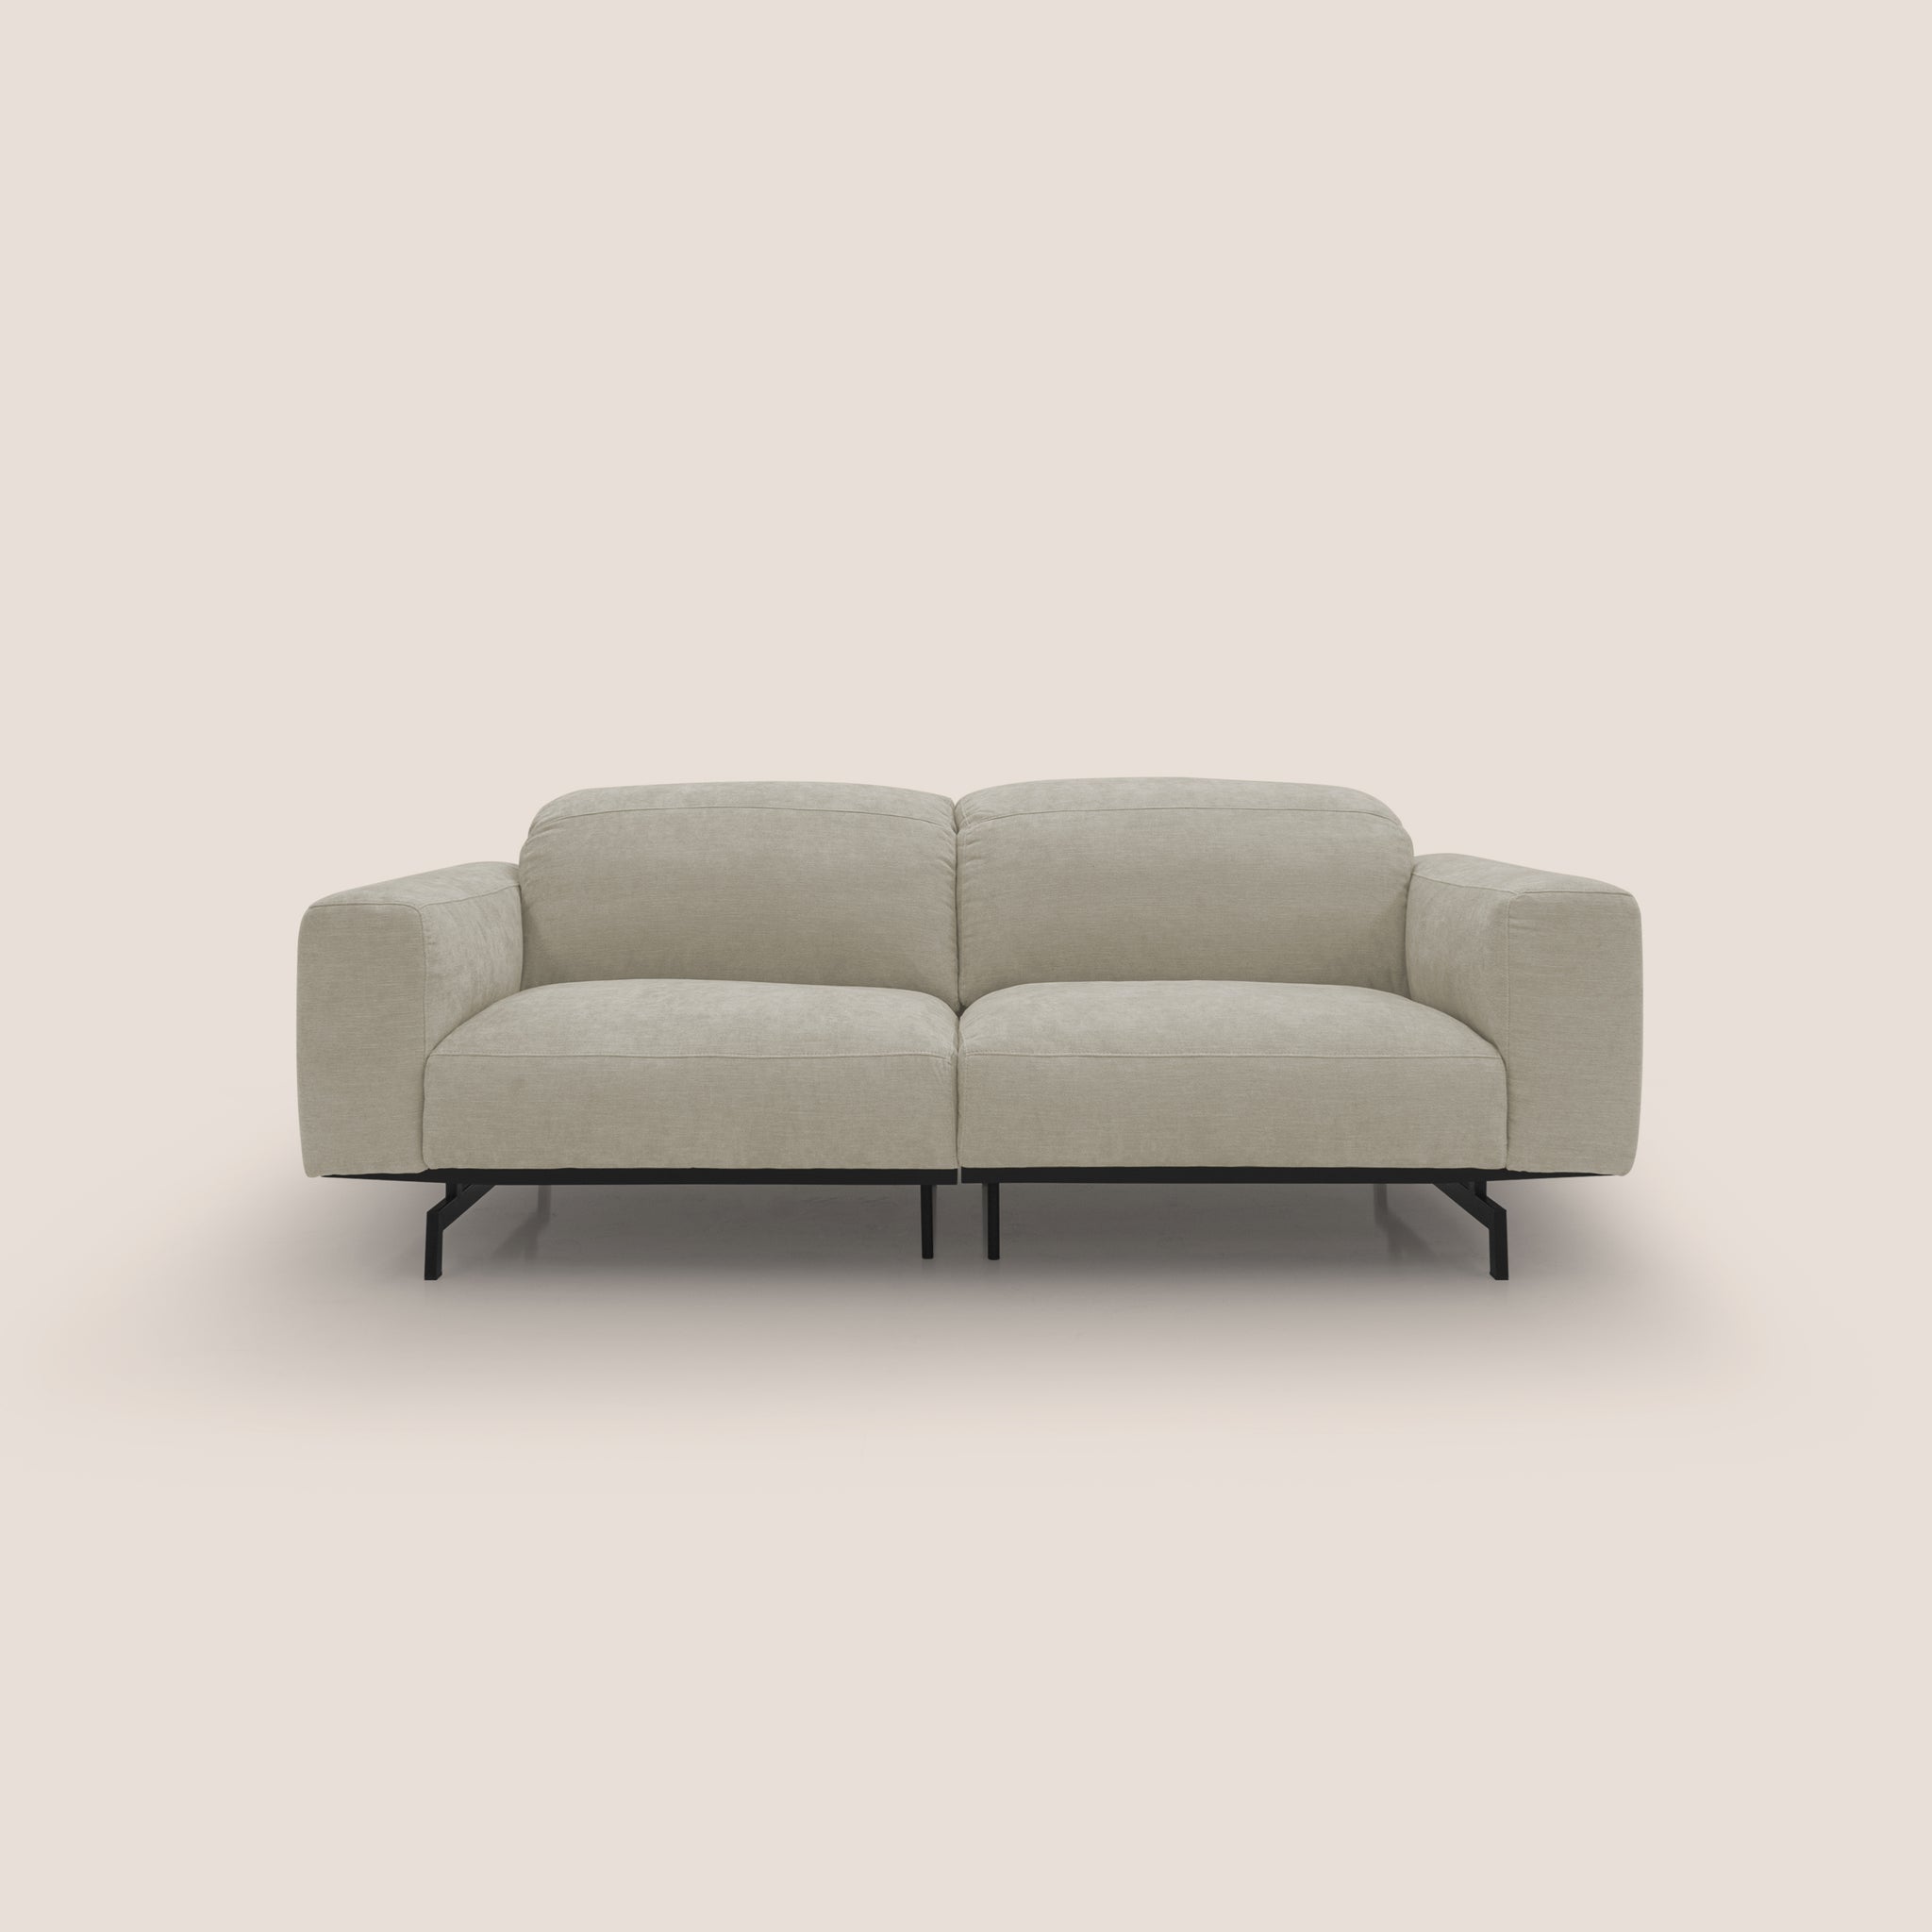 Sakura divano in piuma d'oca modulare componibile in morbido tessuto fiammato impermeabile T14